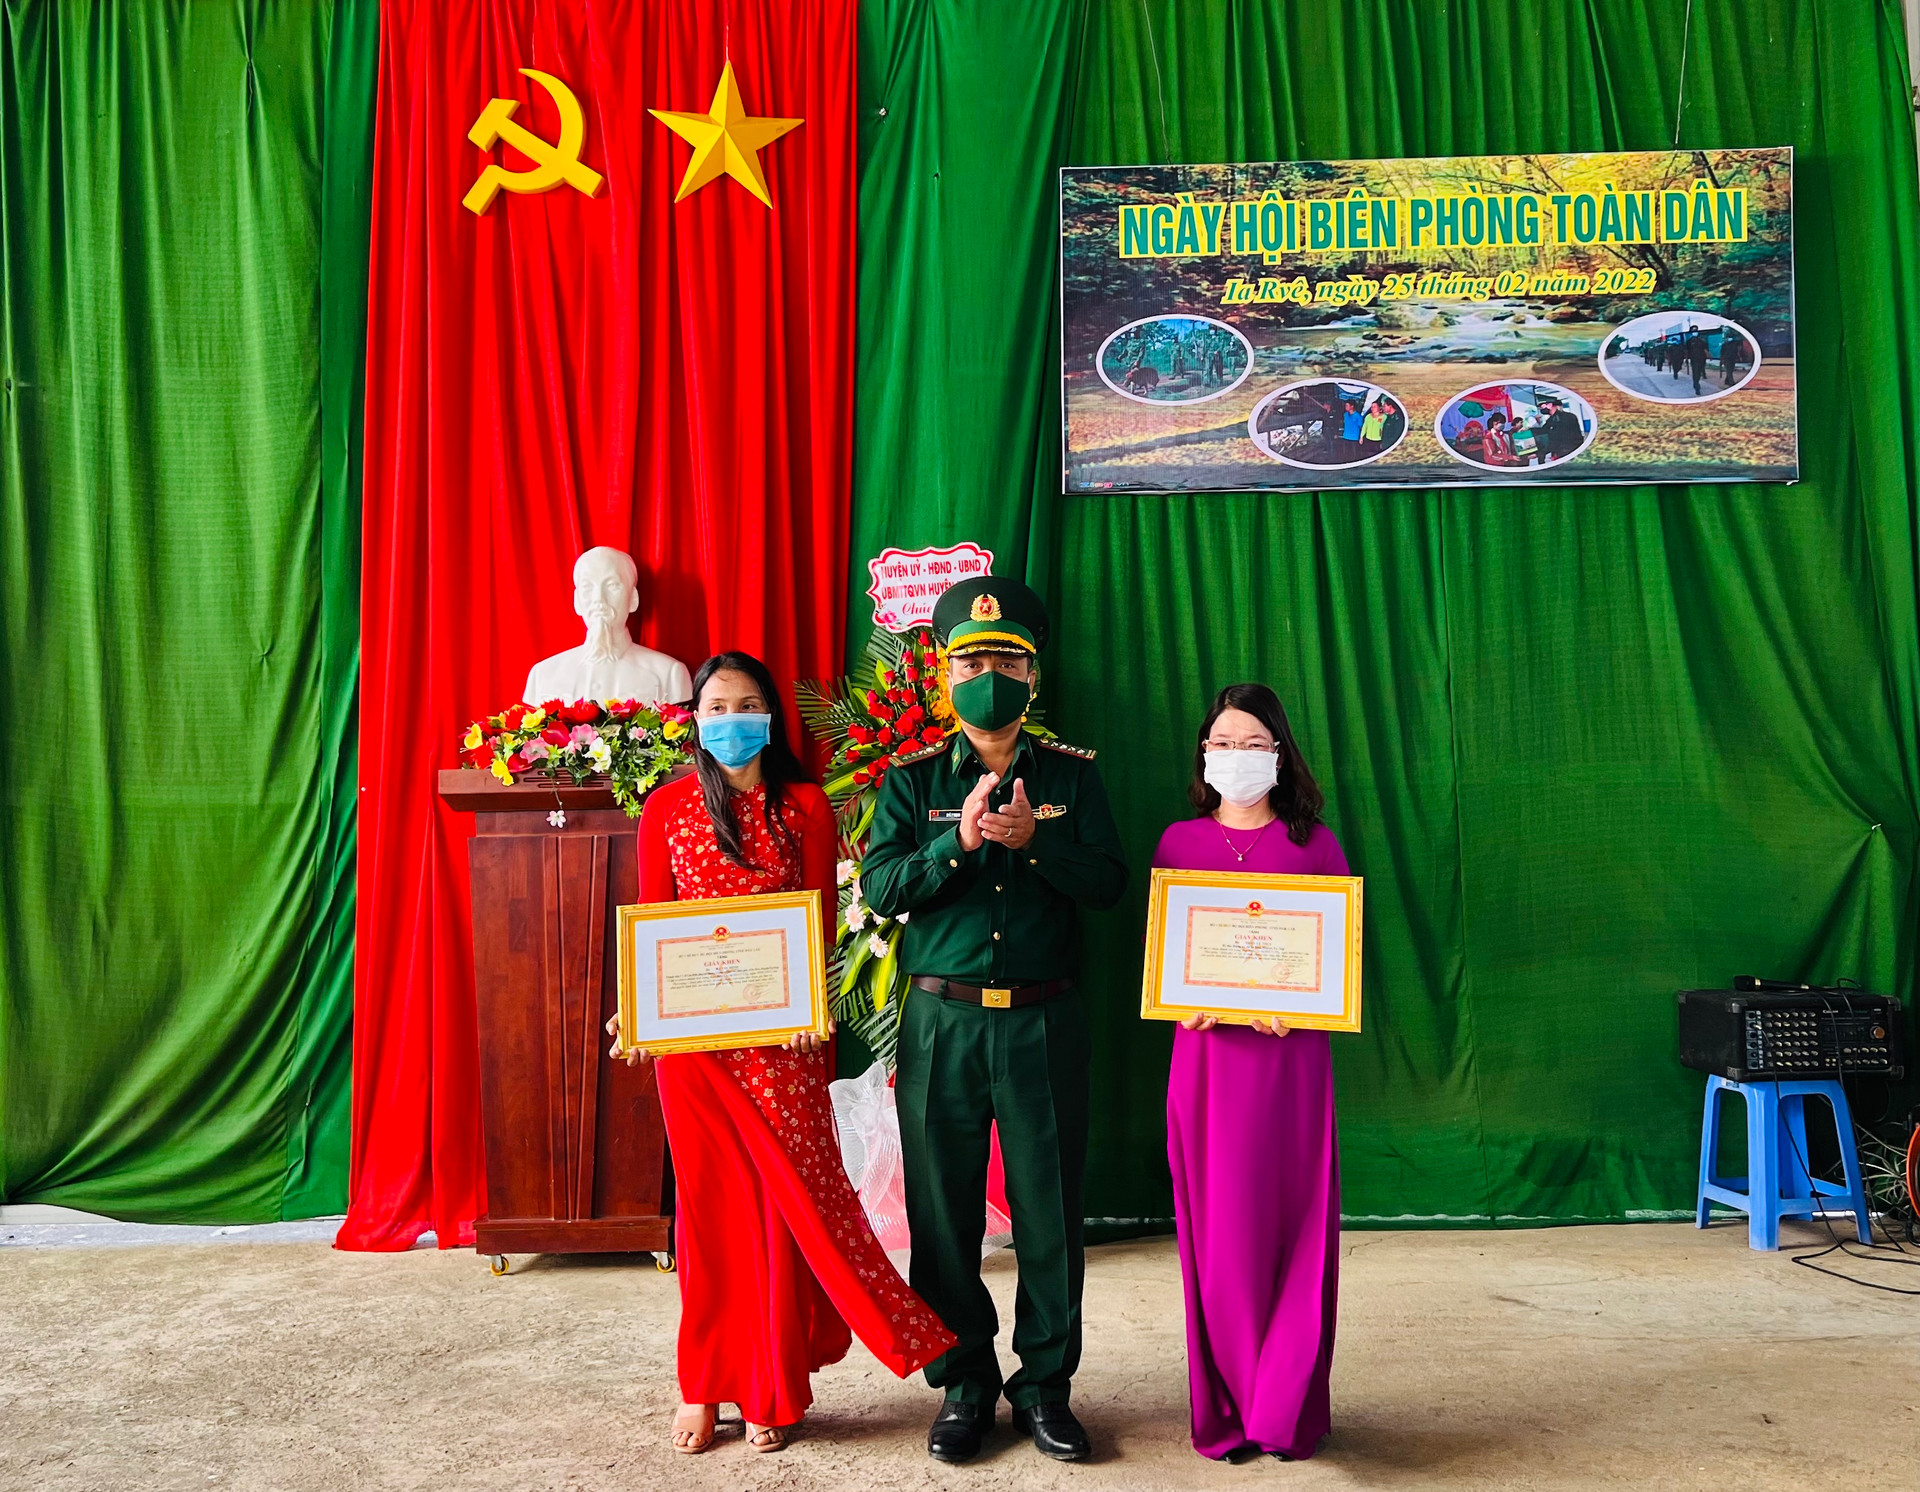 Đại tá Kpă YThạch, Phó Chỉ huy Trưởng Bộ Chỉ huy Bộ đội Biên phòng Đắk Lắk tặng khen cho các cá nhân có thành tích xuất sắc trong phong trào toàn dân tham gia bảo vệ chủ quyền lãnh thổ, an ninh biên giới quốc gia trong tình hình mới.